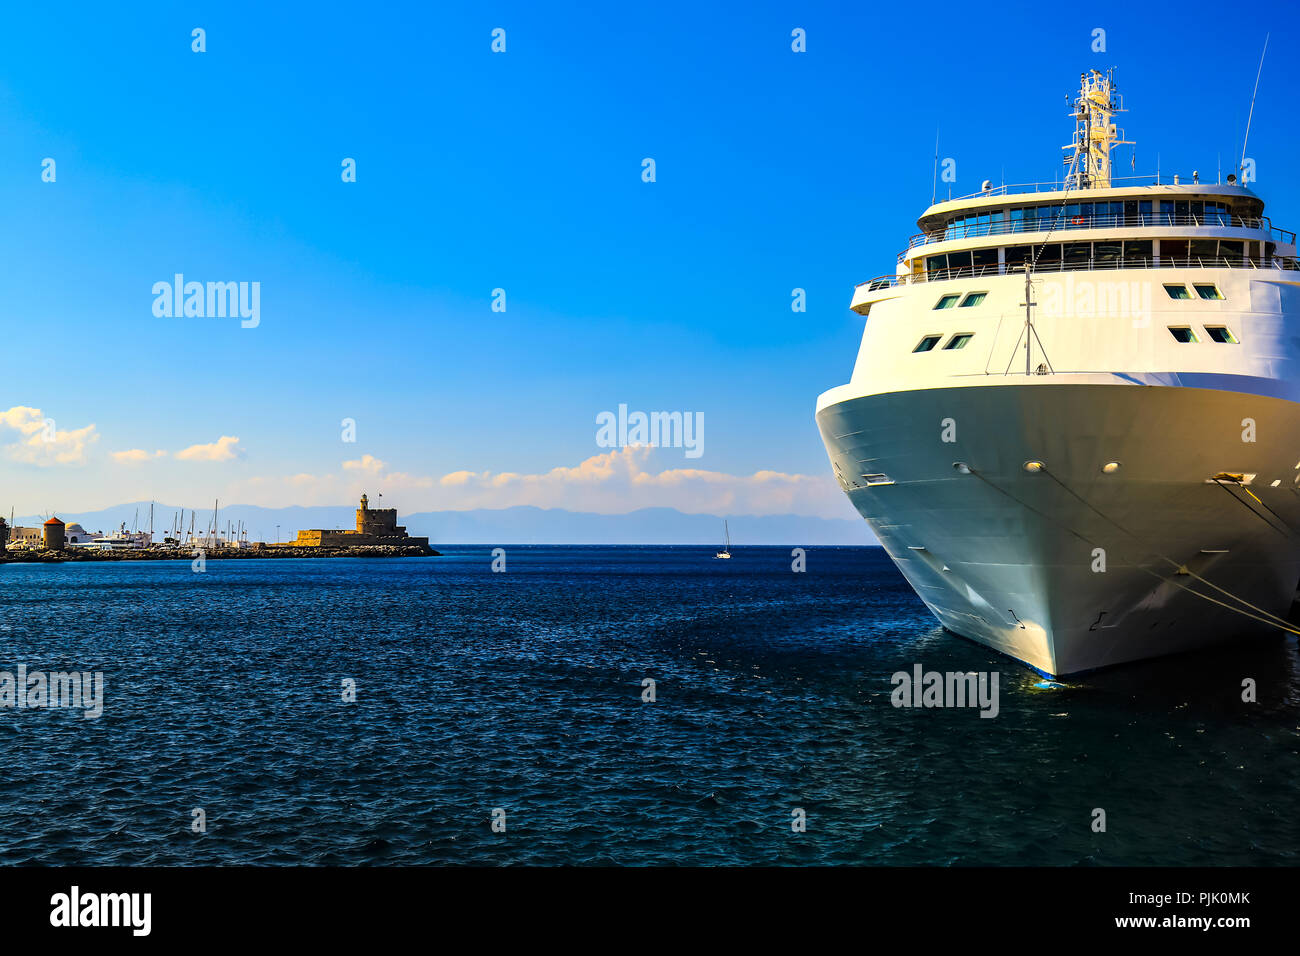 Un grand navire de croisière blanche est à l'embarcadère, l'port de mer. Rhodes, Grèce - un bel endroit pour faire des excursions, voyages, loisirs Banque D'Images